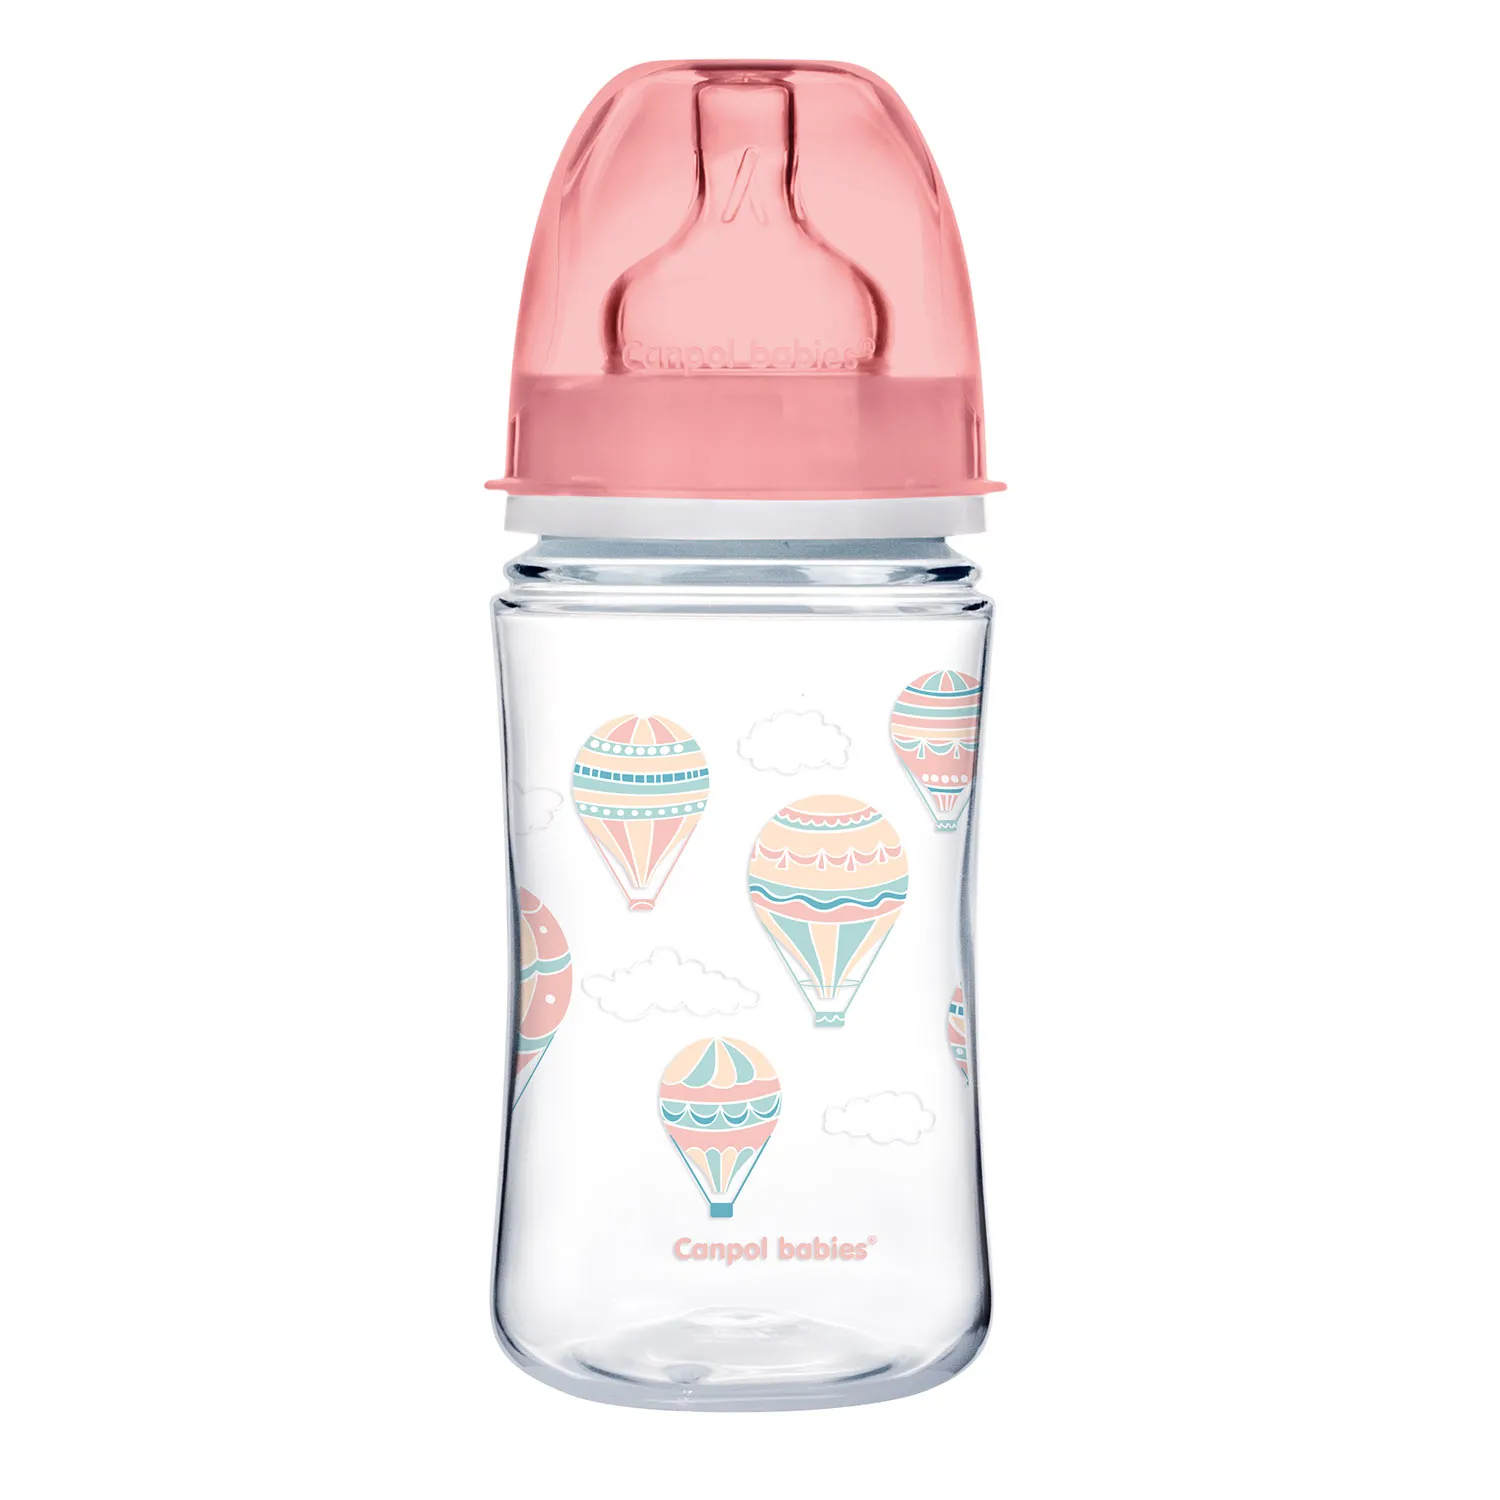 Canpol Babies, butelka szerokootworowa, antykolkowa, 3-6 miesiąca 35/225_pin, 240 ml 